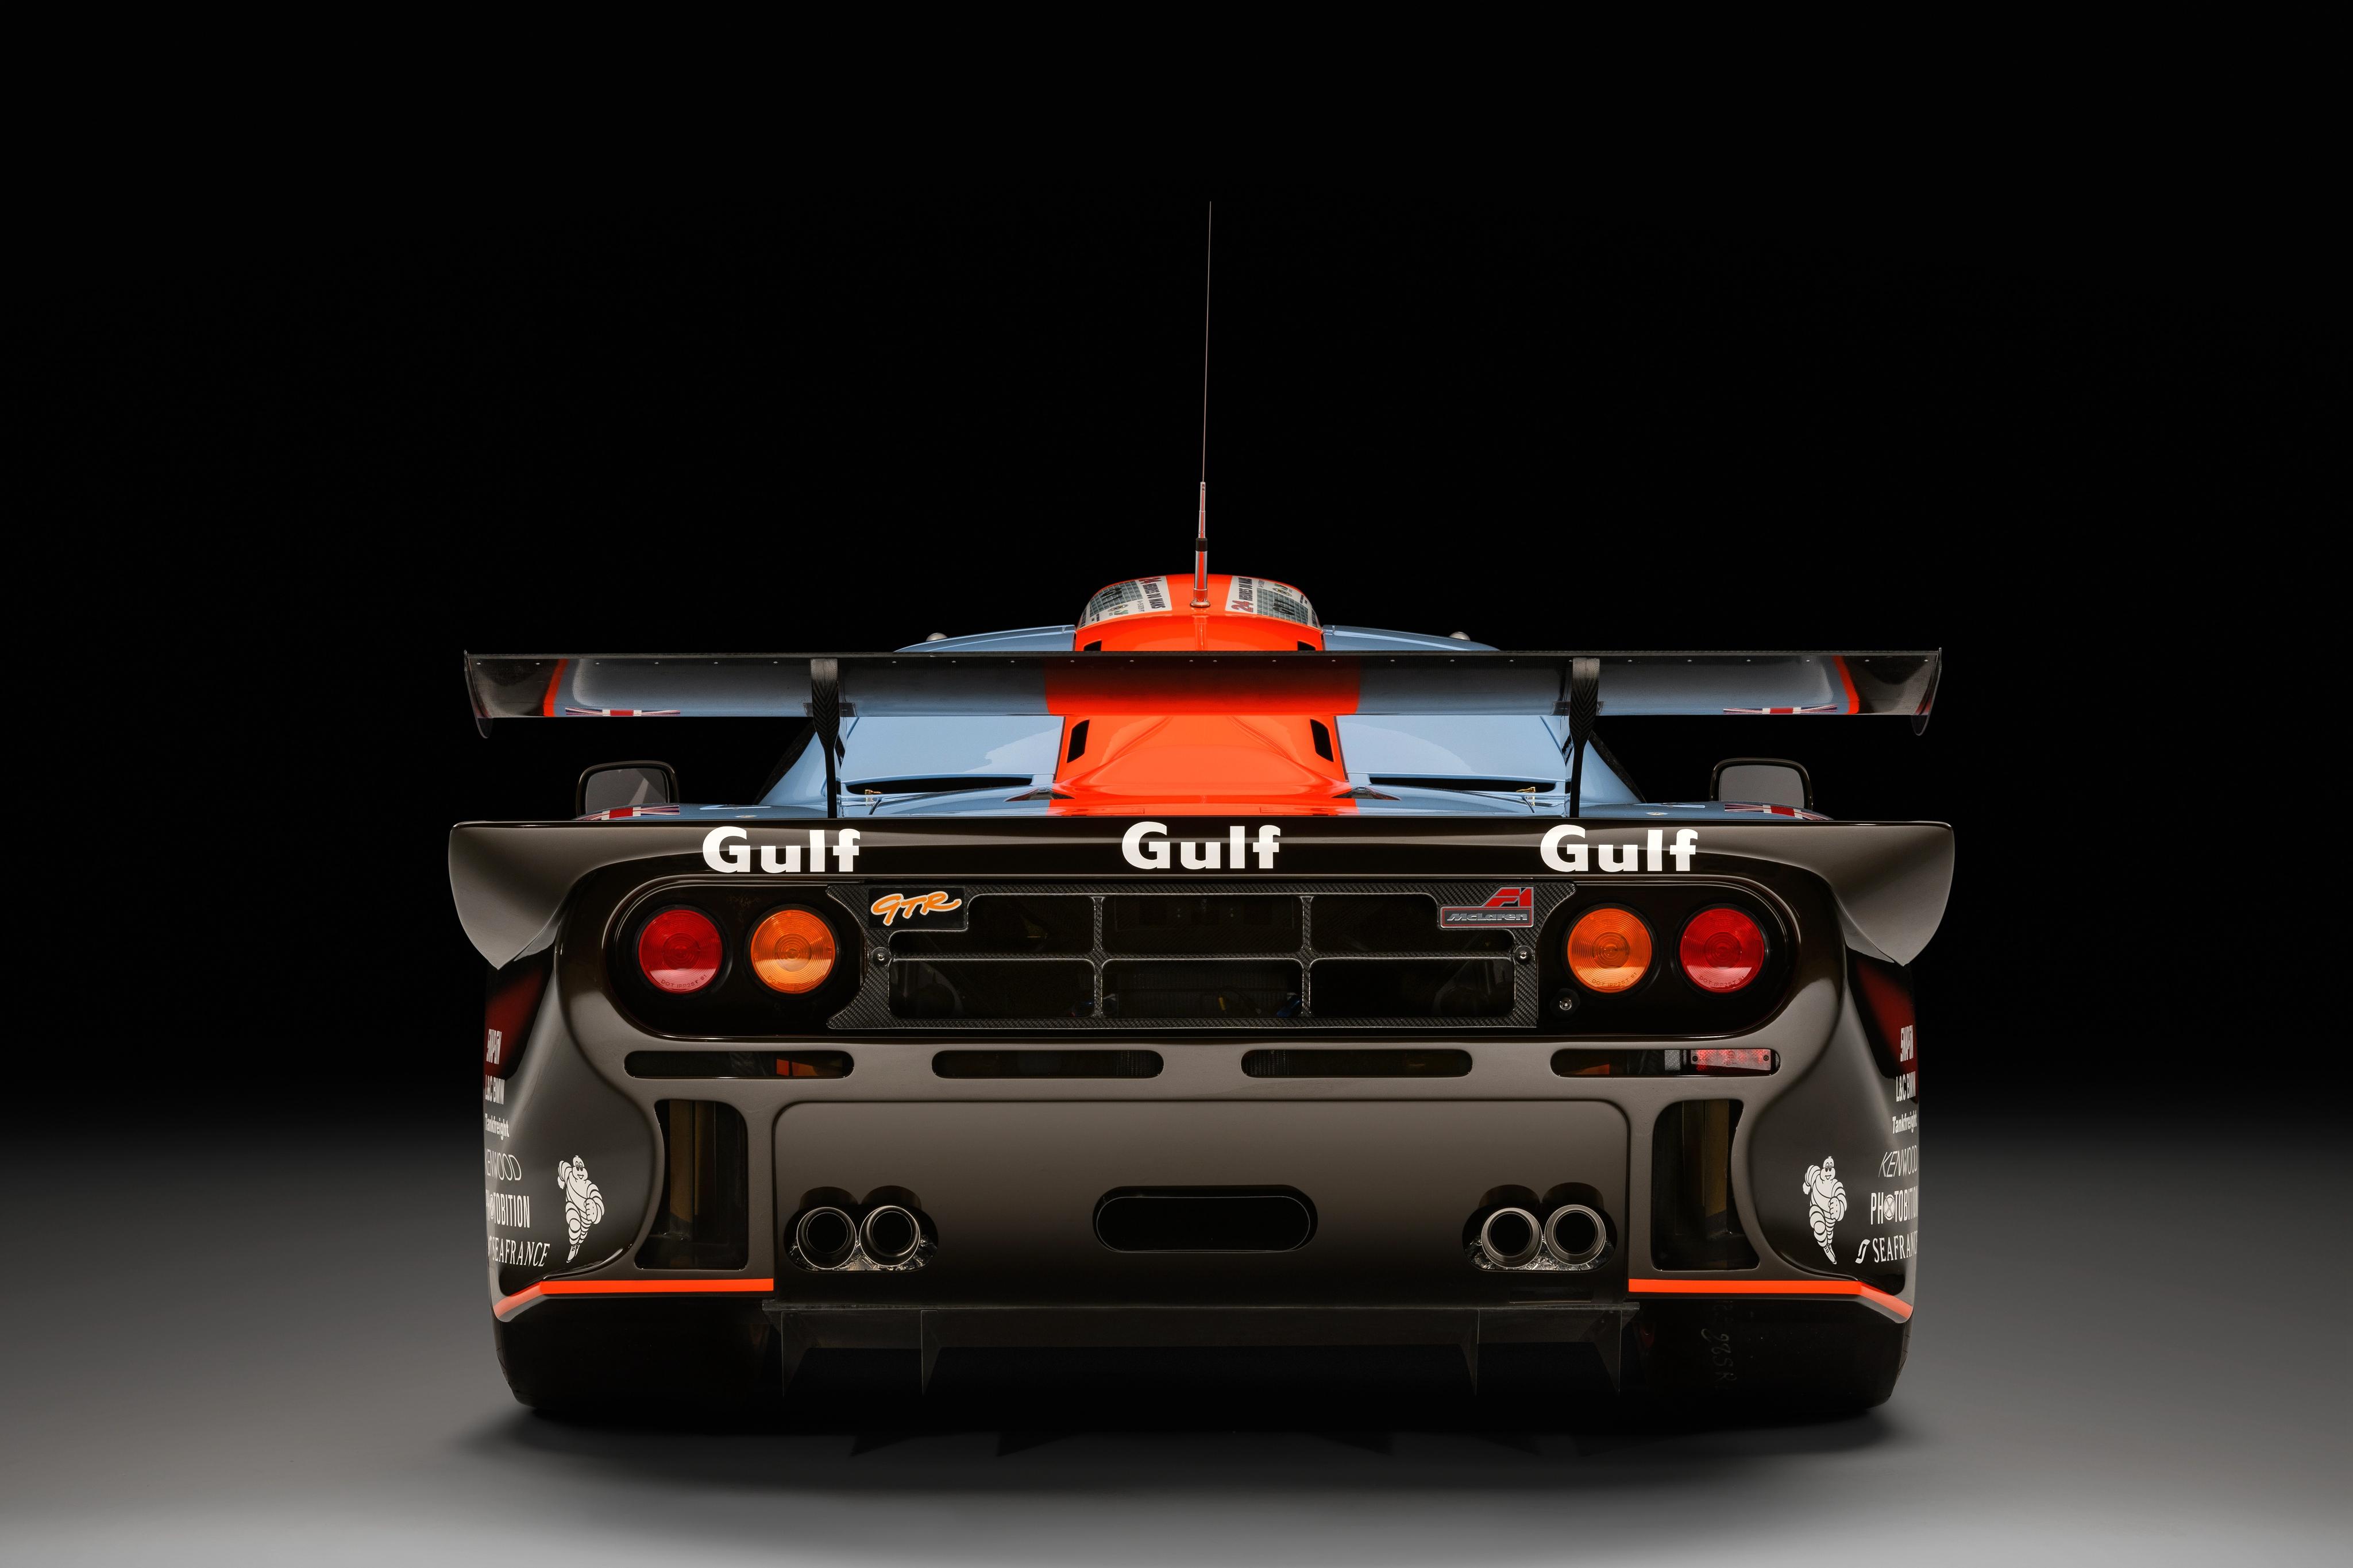 1997 McLaren F1 GTR Longtail (分辨率:4000) _图片_猫扑汽车